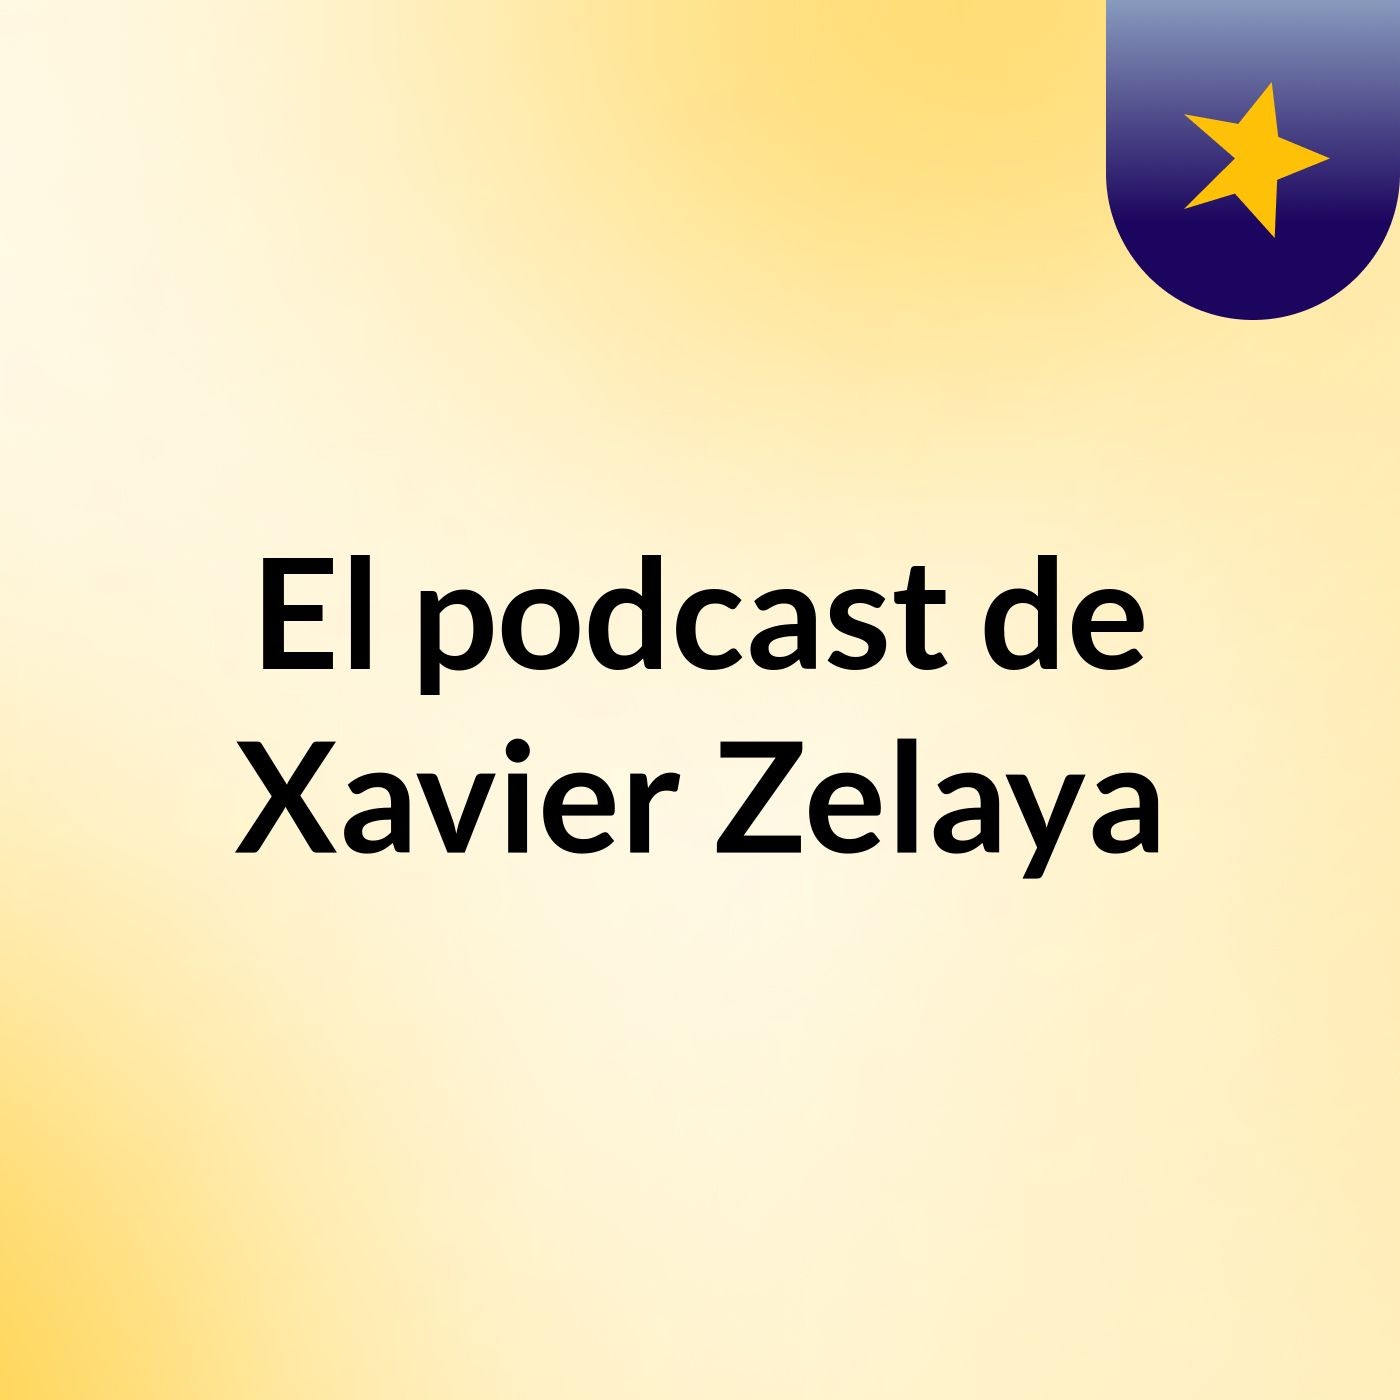 El podcast de Xavier Zelaya